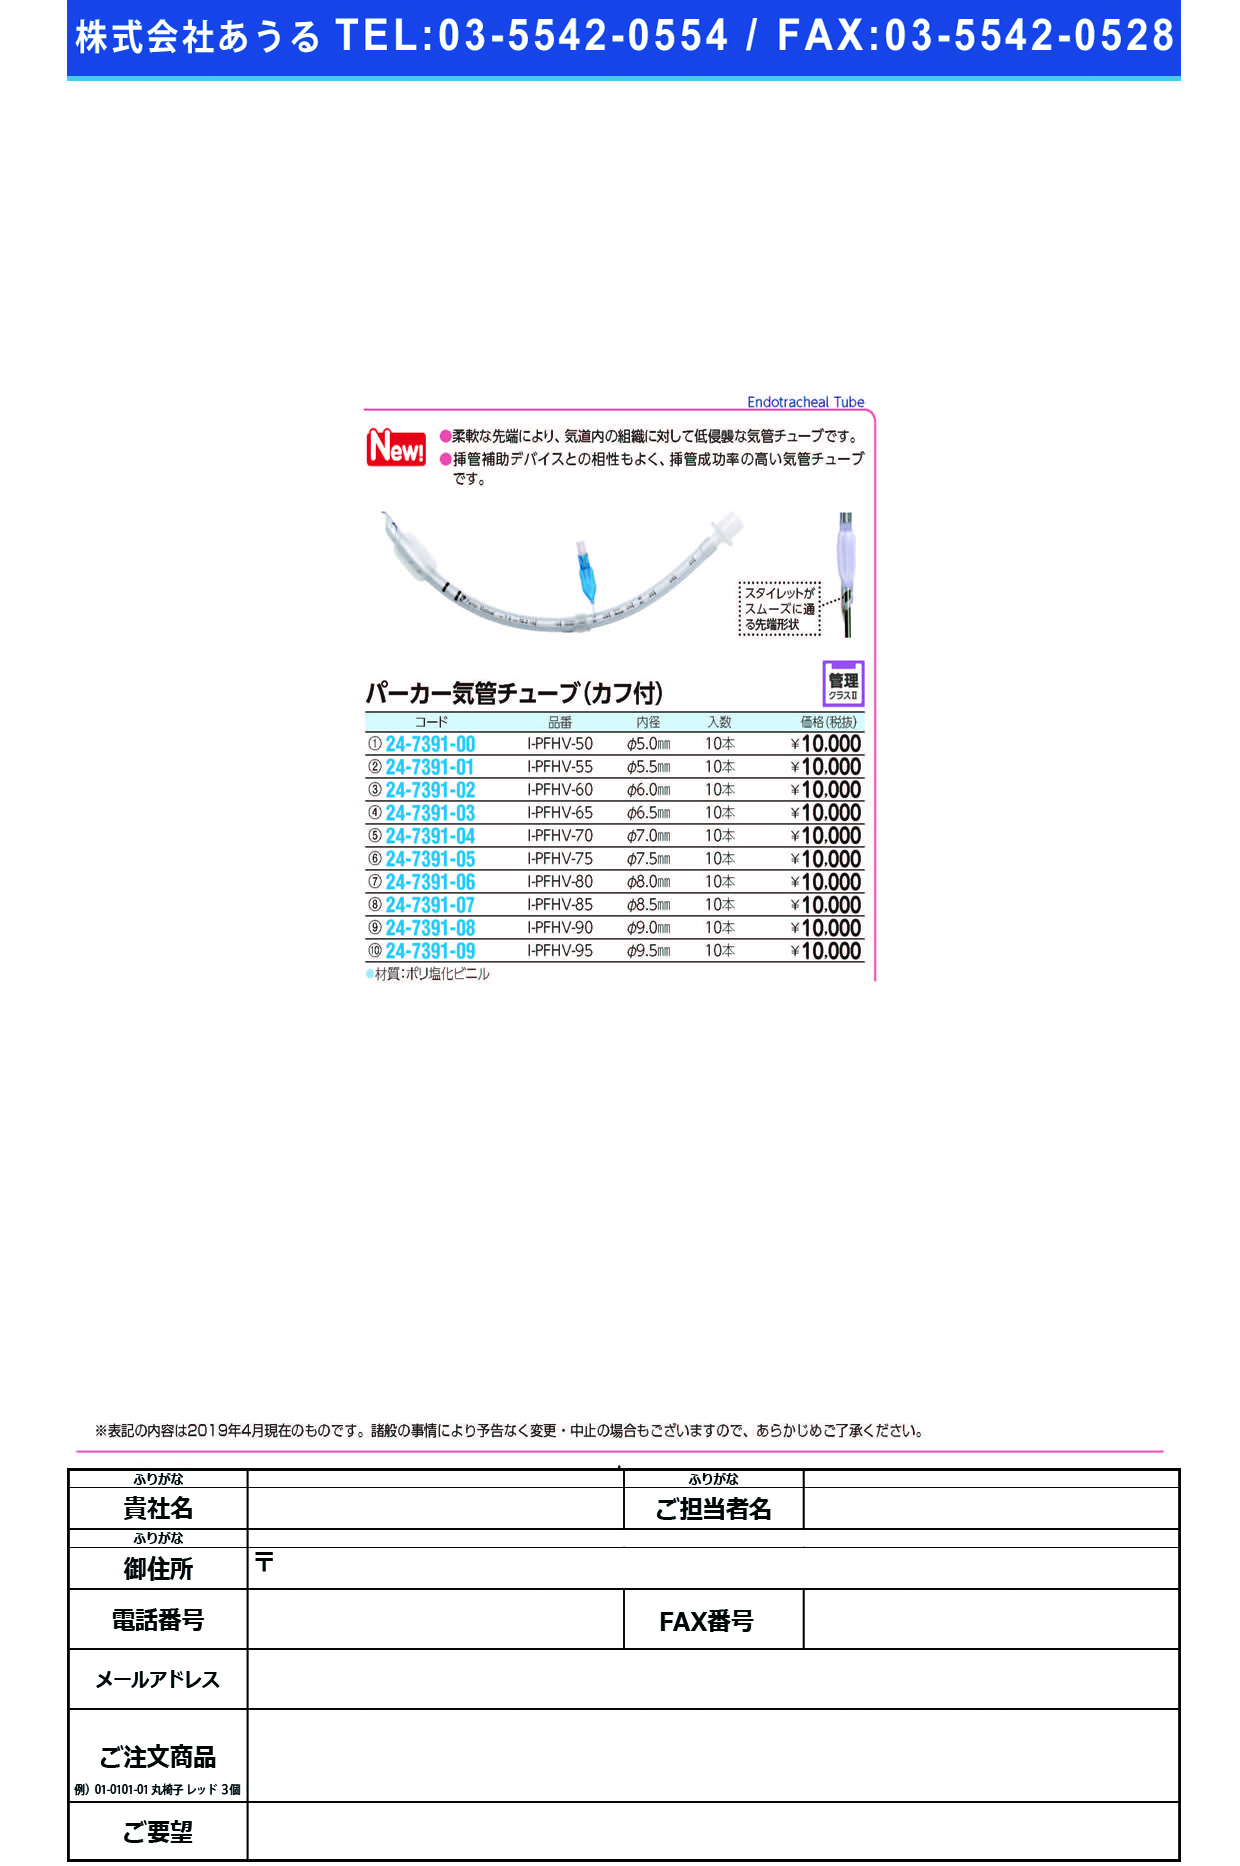 (24-7391-04)パーカー気管チューブI-PFHV-70(7.0MM)10ﾎﾝ ﾊﾟｰｶｰｷｶﾝﾁｭｰﾌﾞ(日本メディカルネクスト)【1箱単位】【2019年カタログ商品】